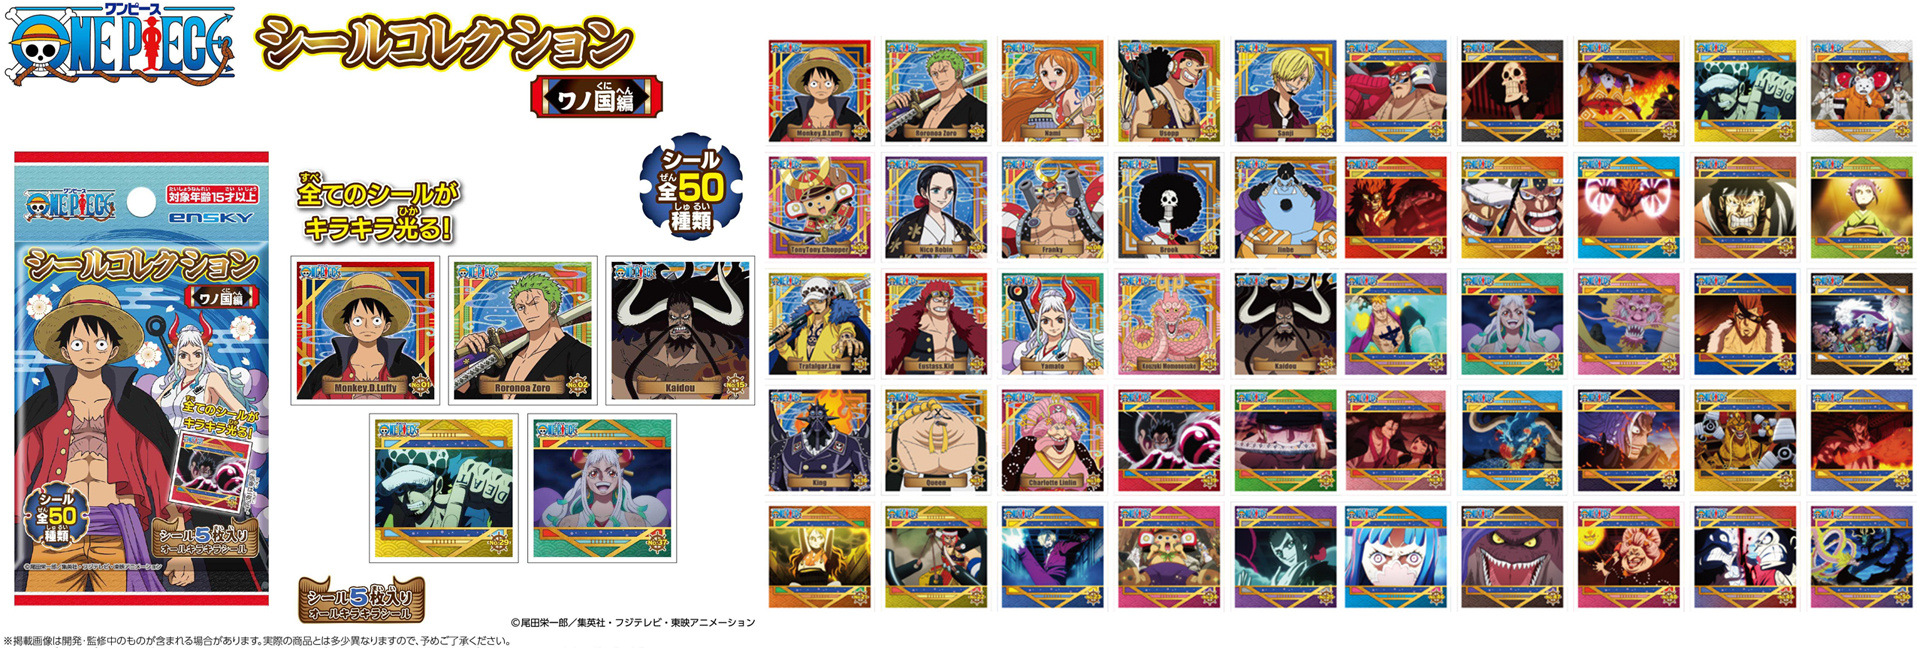 One Piece Deco Sticker Wano Country Arc #06 Franky 2 pieces Ensky